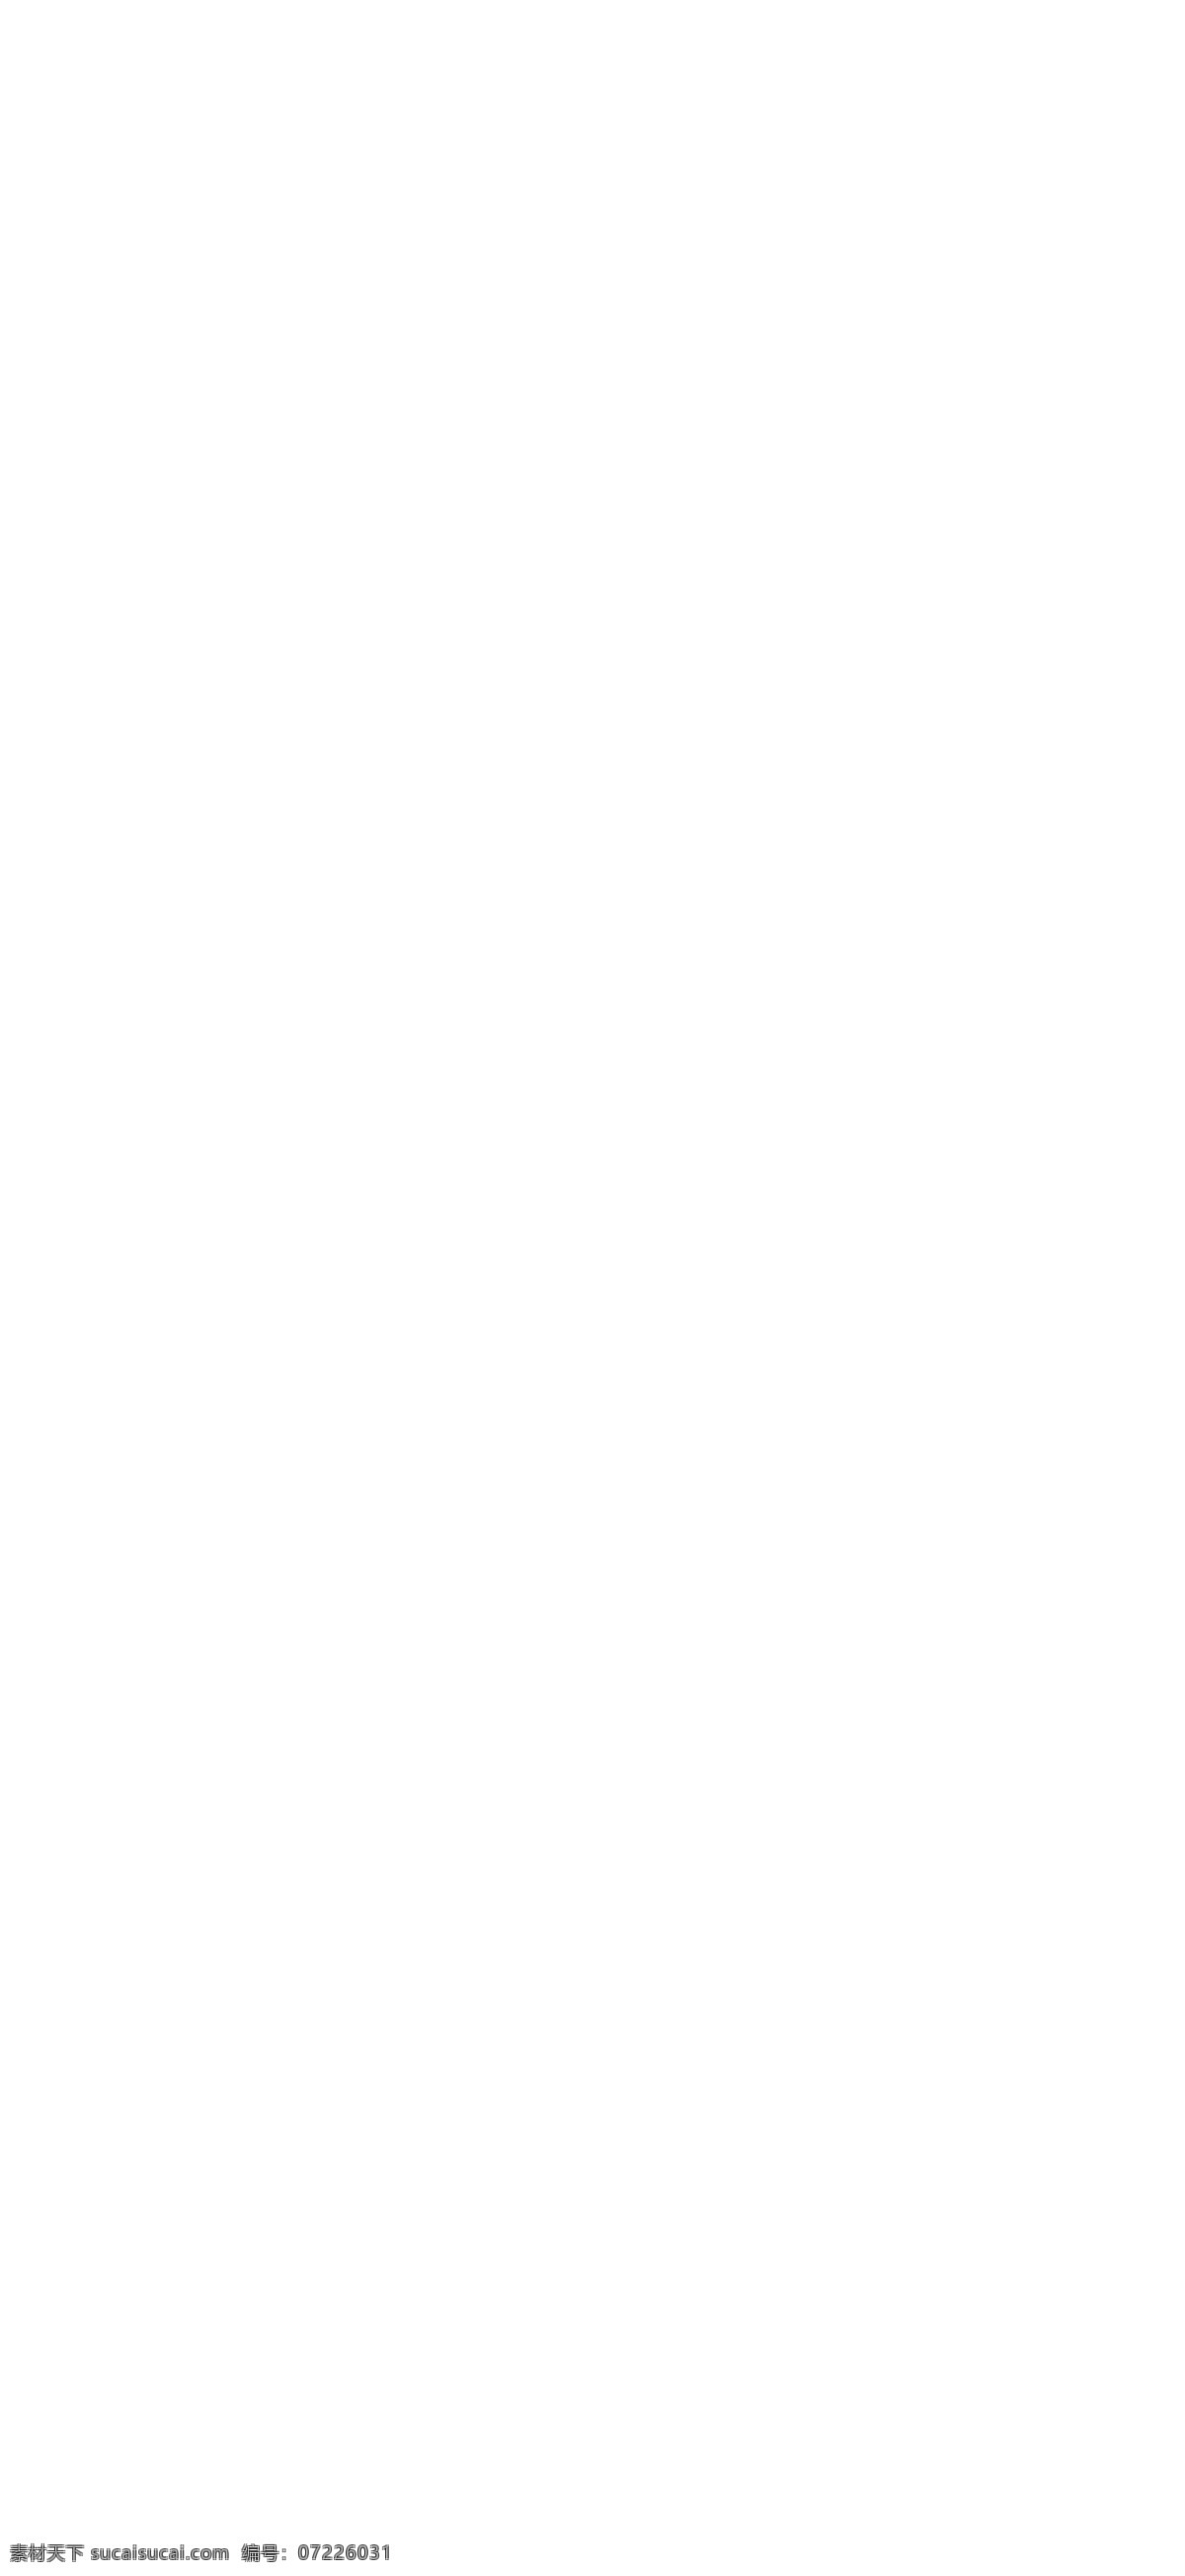 2016 天猫 超级 运动会 logo 图标素材 设计素材 天猫logo 淘宝logo 图标 淘宝图标 超级运动会 淘宝 淘宝装修素材 店铺促销 淘宝素材 psd格式